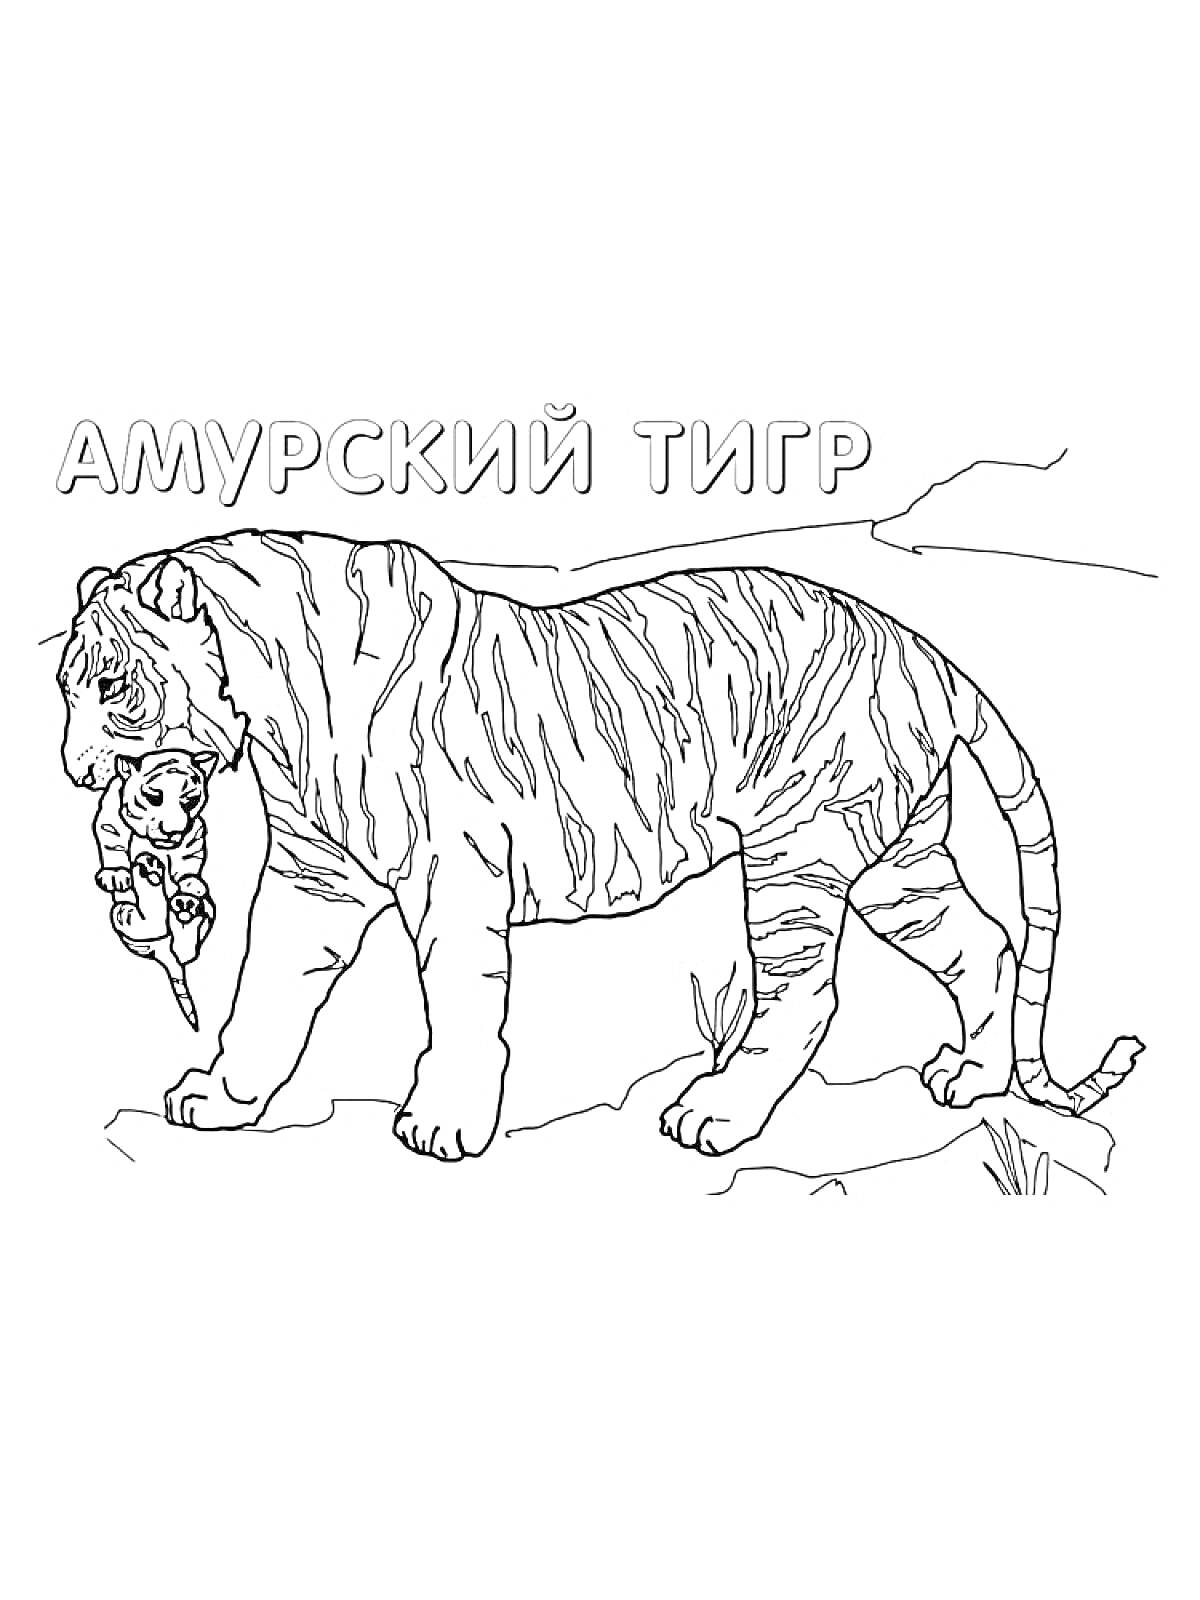 Амурский тигр, тигр с детёнышем в зубах, растительность, каменистая поверхность